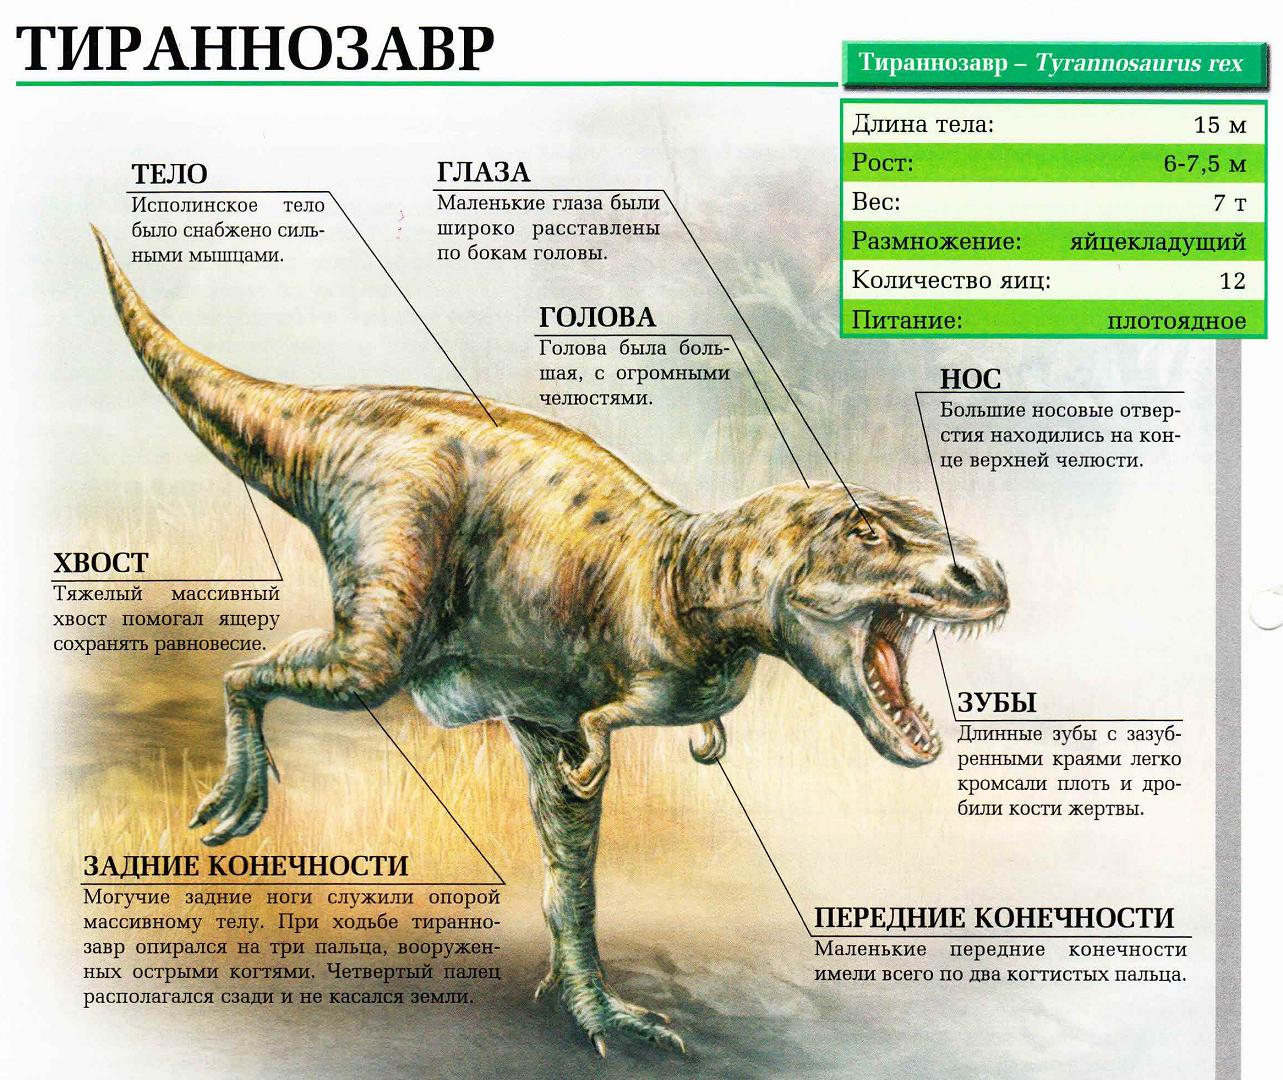 Тираннозавр – крупнейший наземный хищник Земли.:::Тираннозавр.